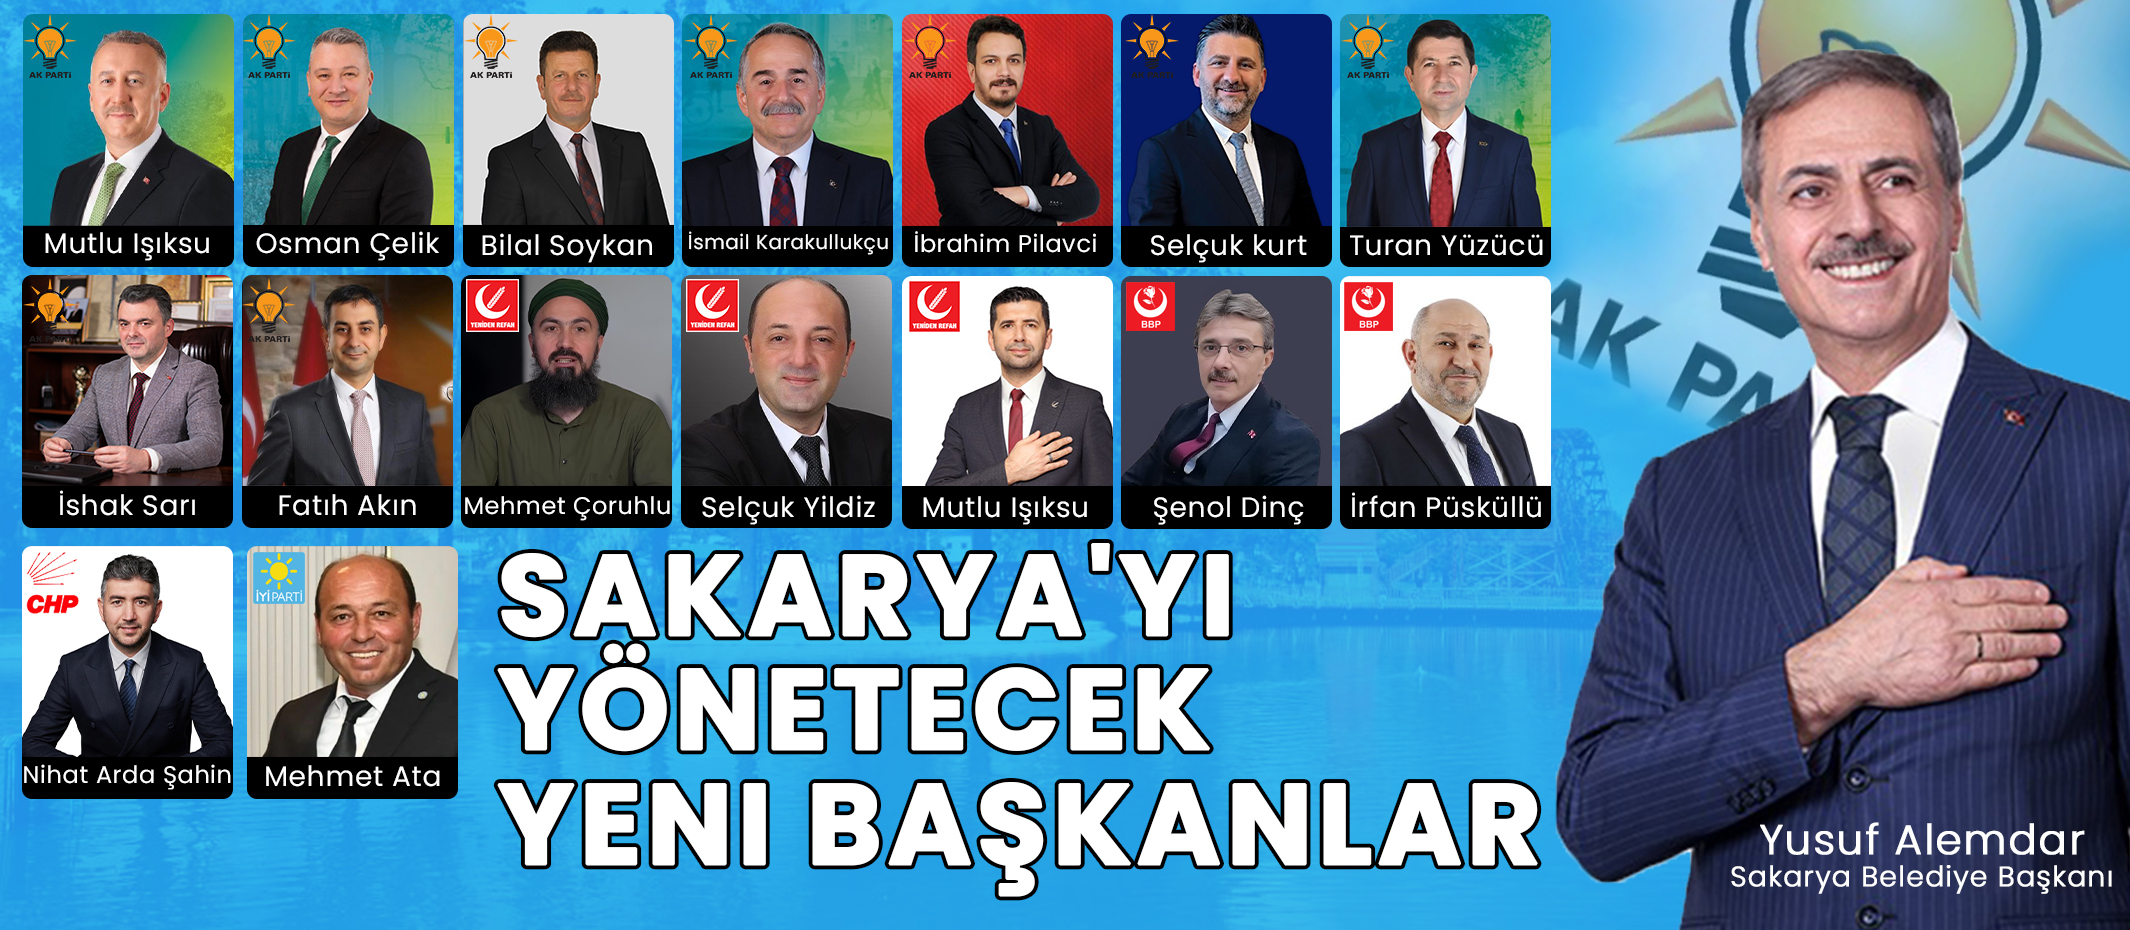 Sakarya'yı Yönetecek Yeni Başkanlar